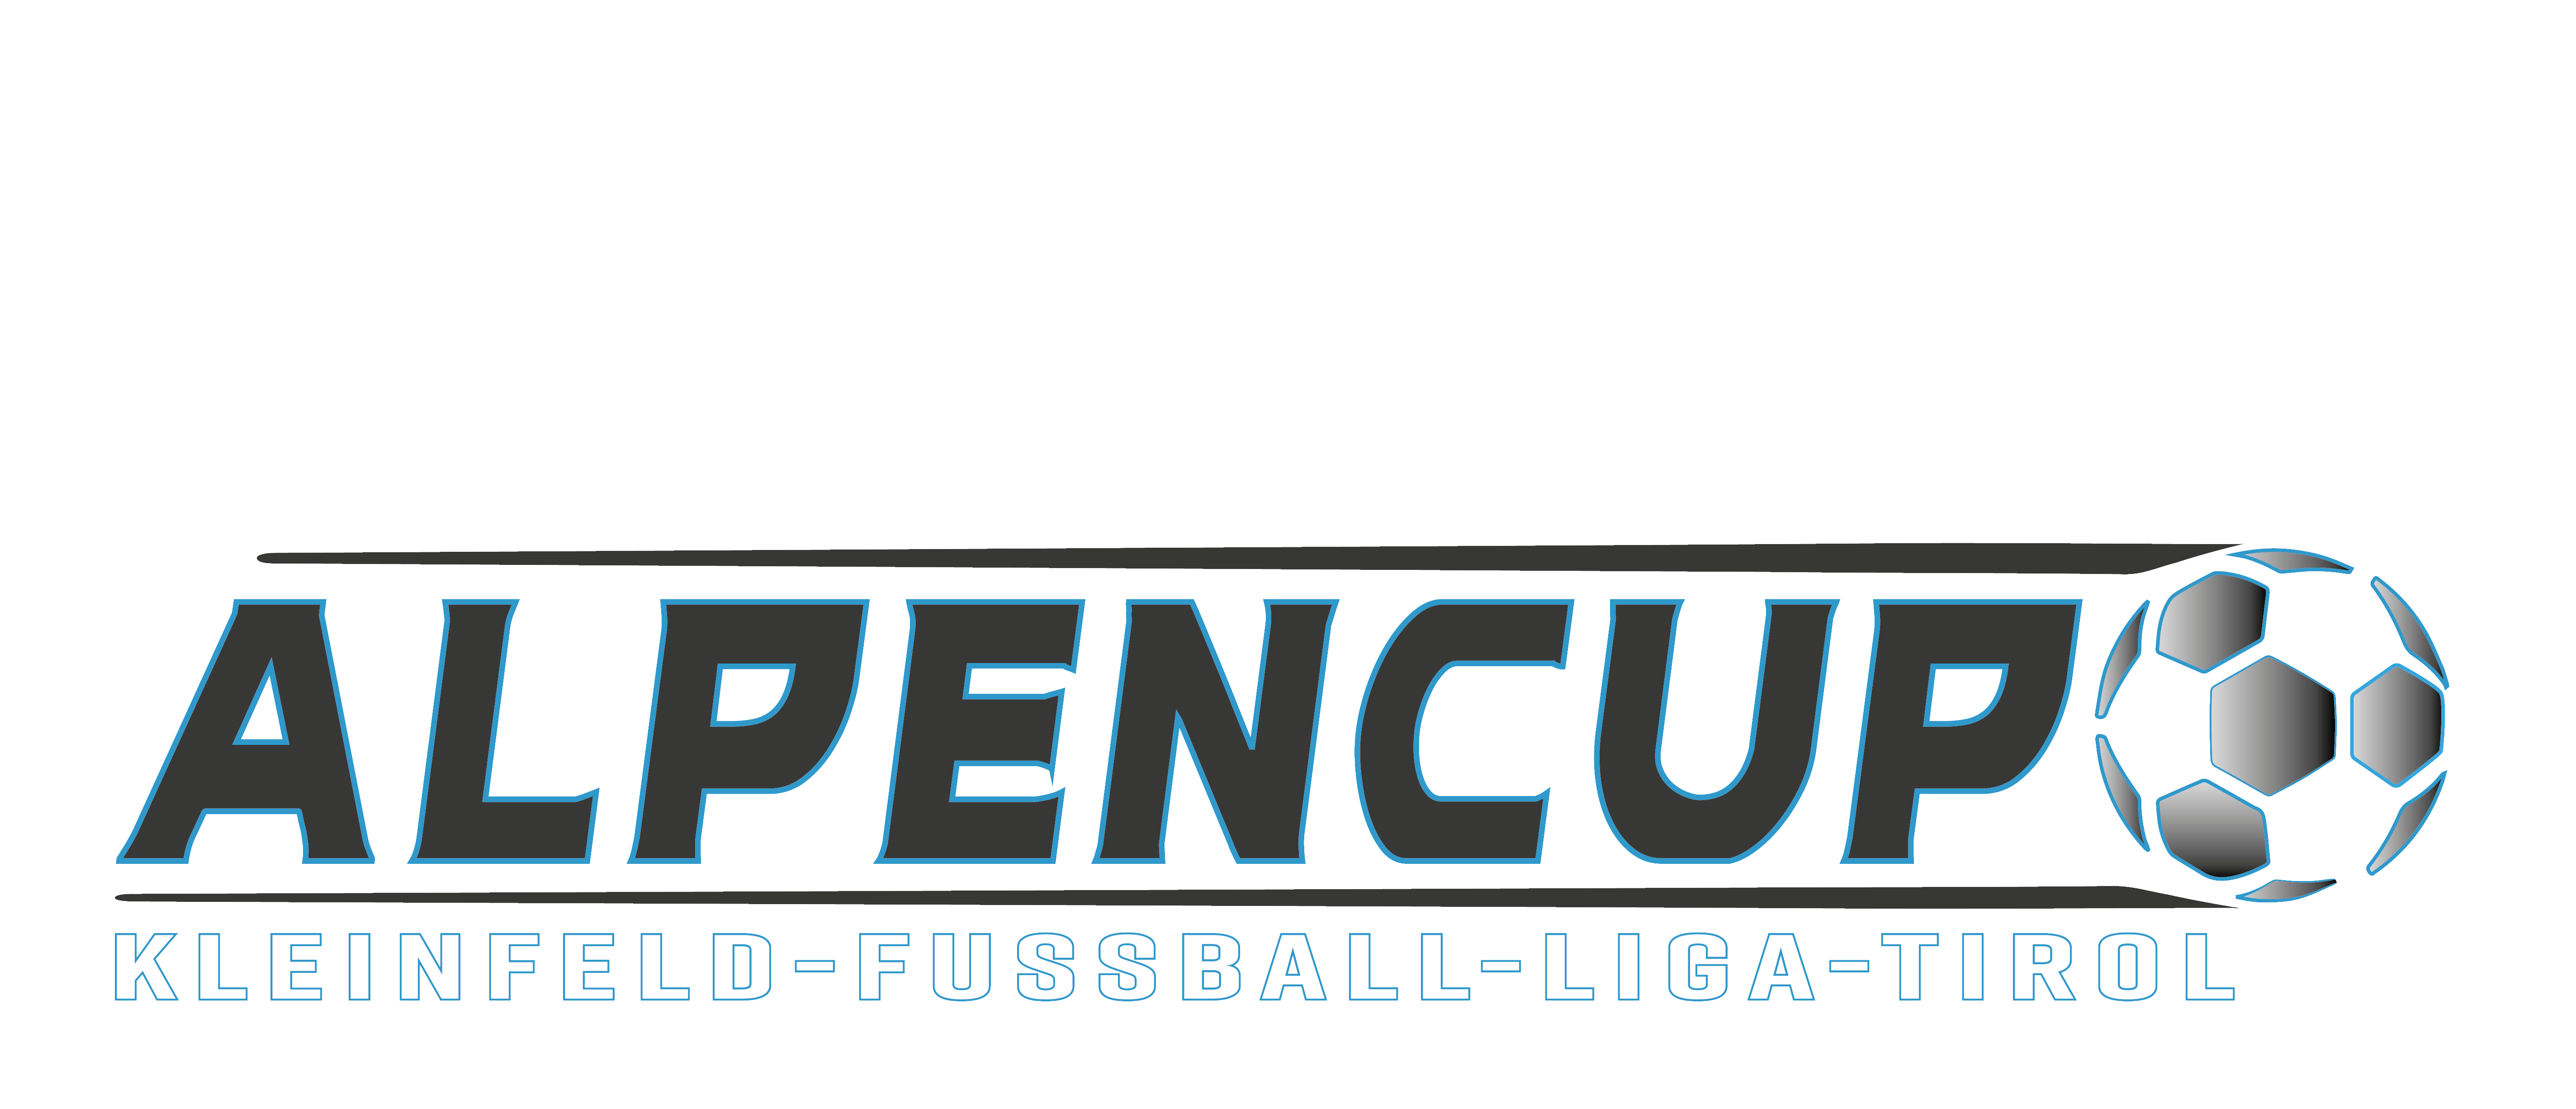 Alpencup – Kleinfeldfußball – Liga – Tirol